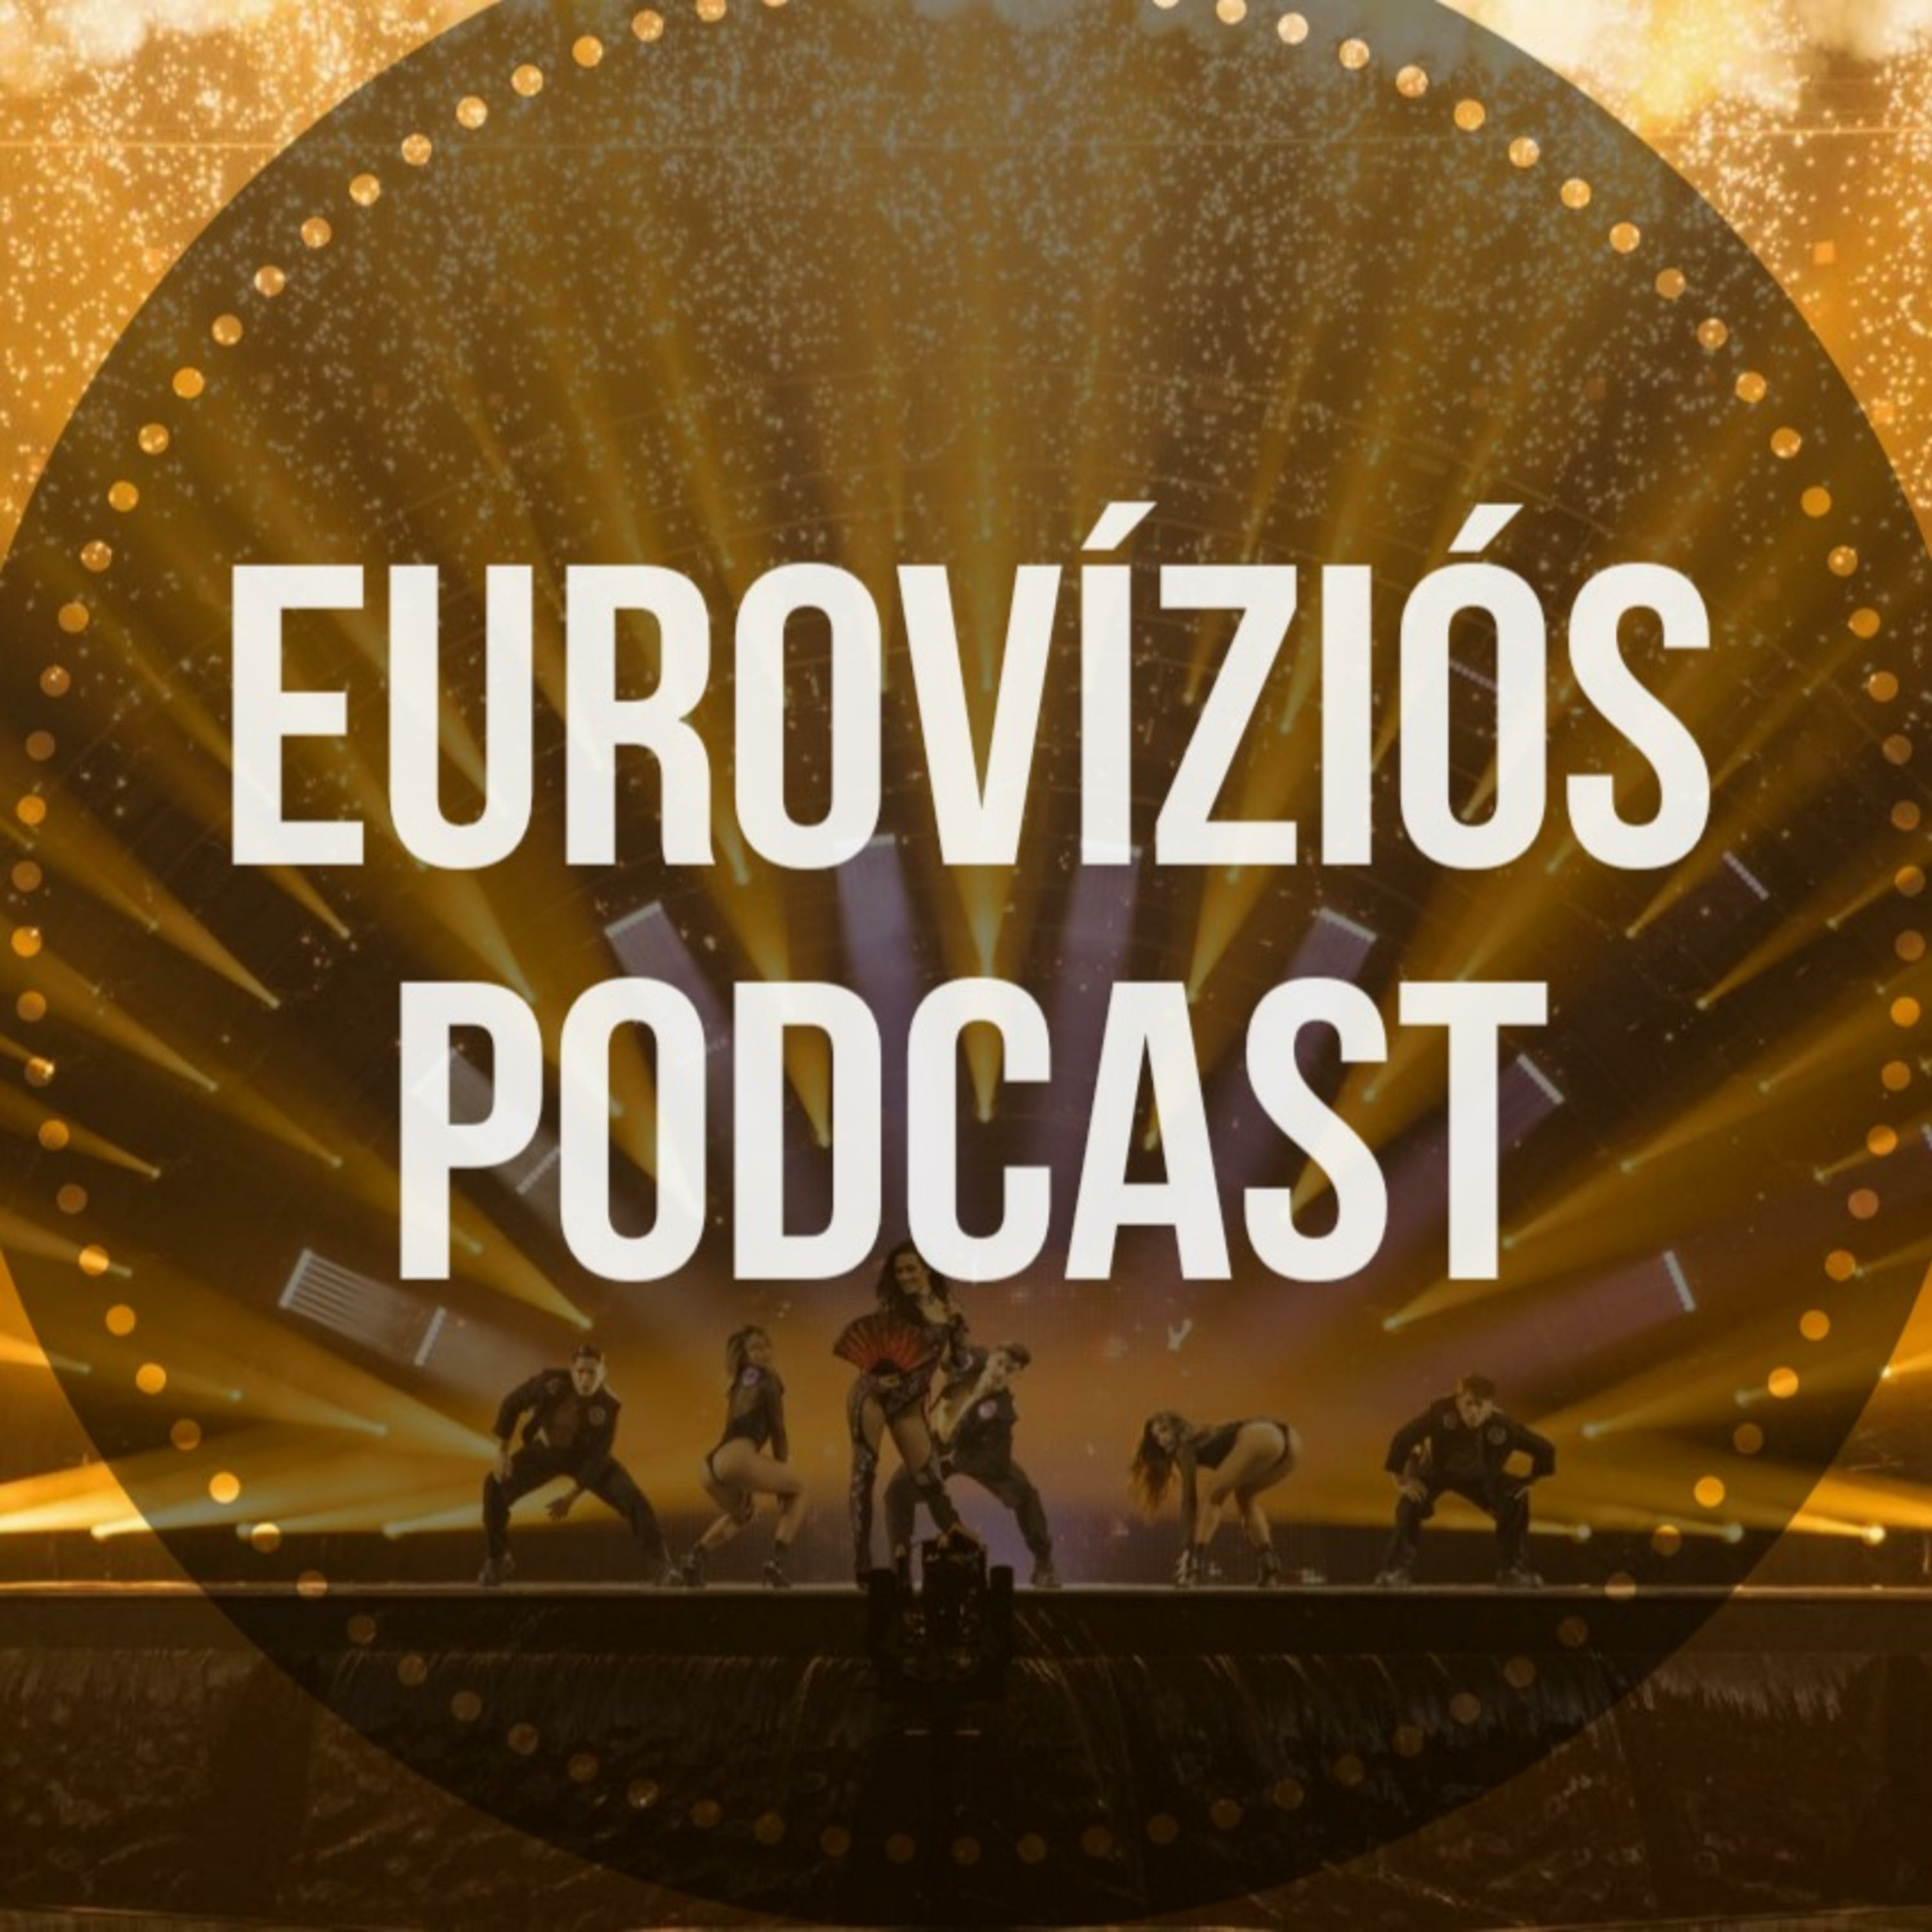 Eurovíziós Podcast - 3. rész - Kállay Saunders meg akarja nyerni az Eurovíziót, csak térjen vissza Magyarország